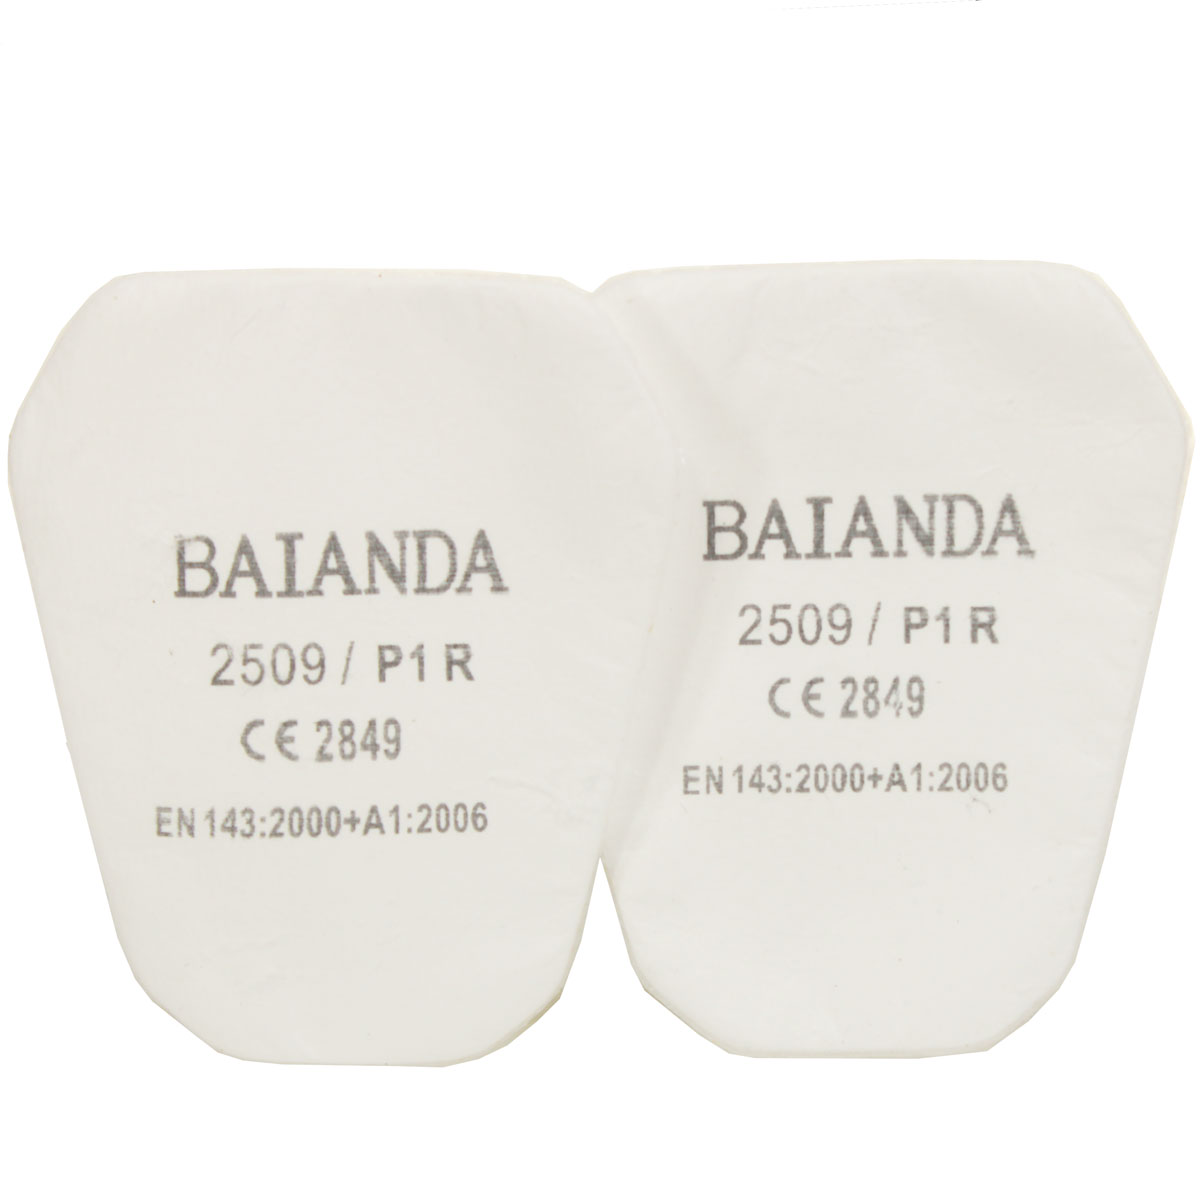 Комплект противоаэрозольных фильтров (предфильтров) BAIANDA 2509, класс P1R, 10 шт/уп комплект фильтров для пылесоса electrolux eskq9